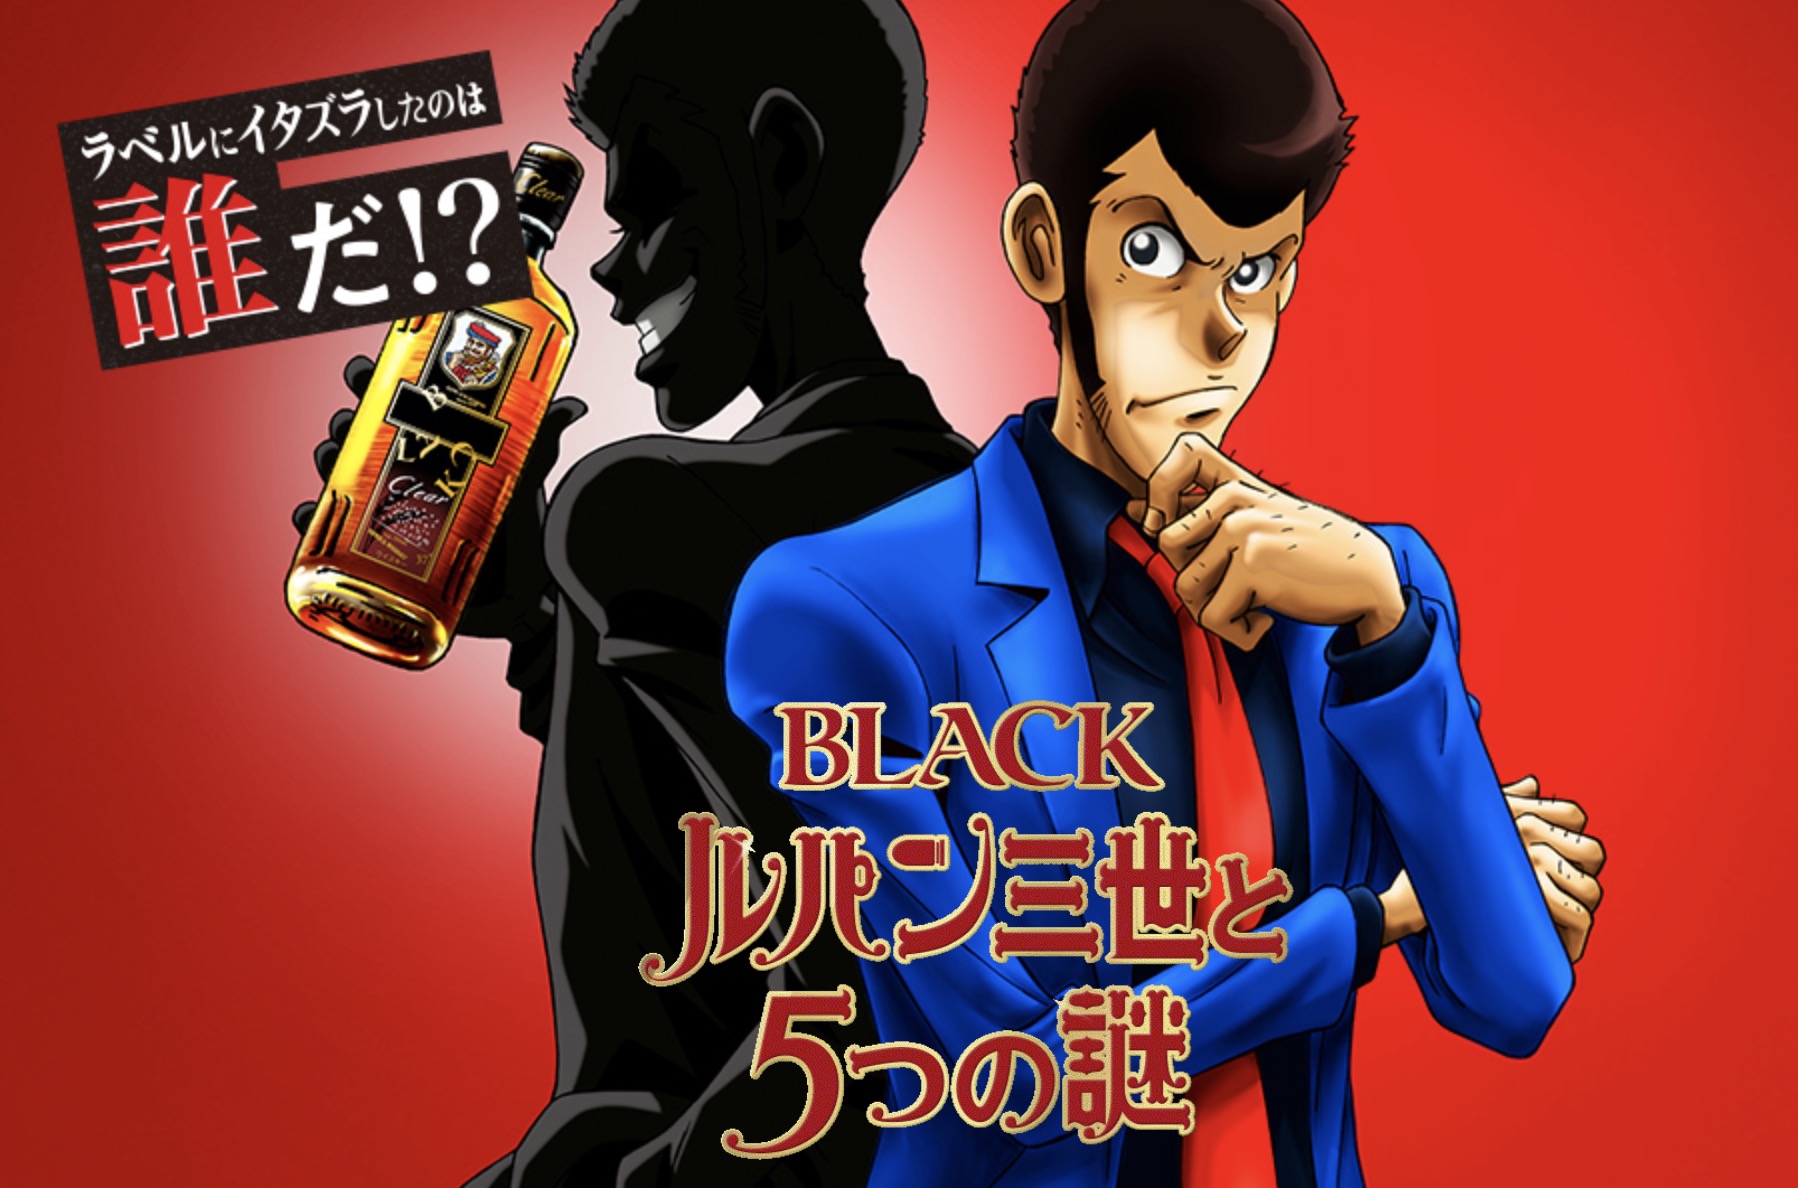 Nikka ブラックニッカ ウヰスキー ルパン 謎解き Amazonギフト1000円分が当たるキャンペーンの謎解きを解いてみた 答えよりのヒント有り 東京るんるん